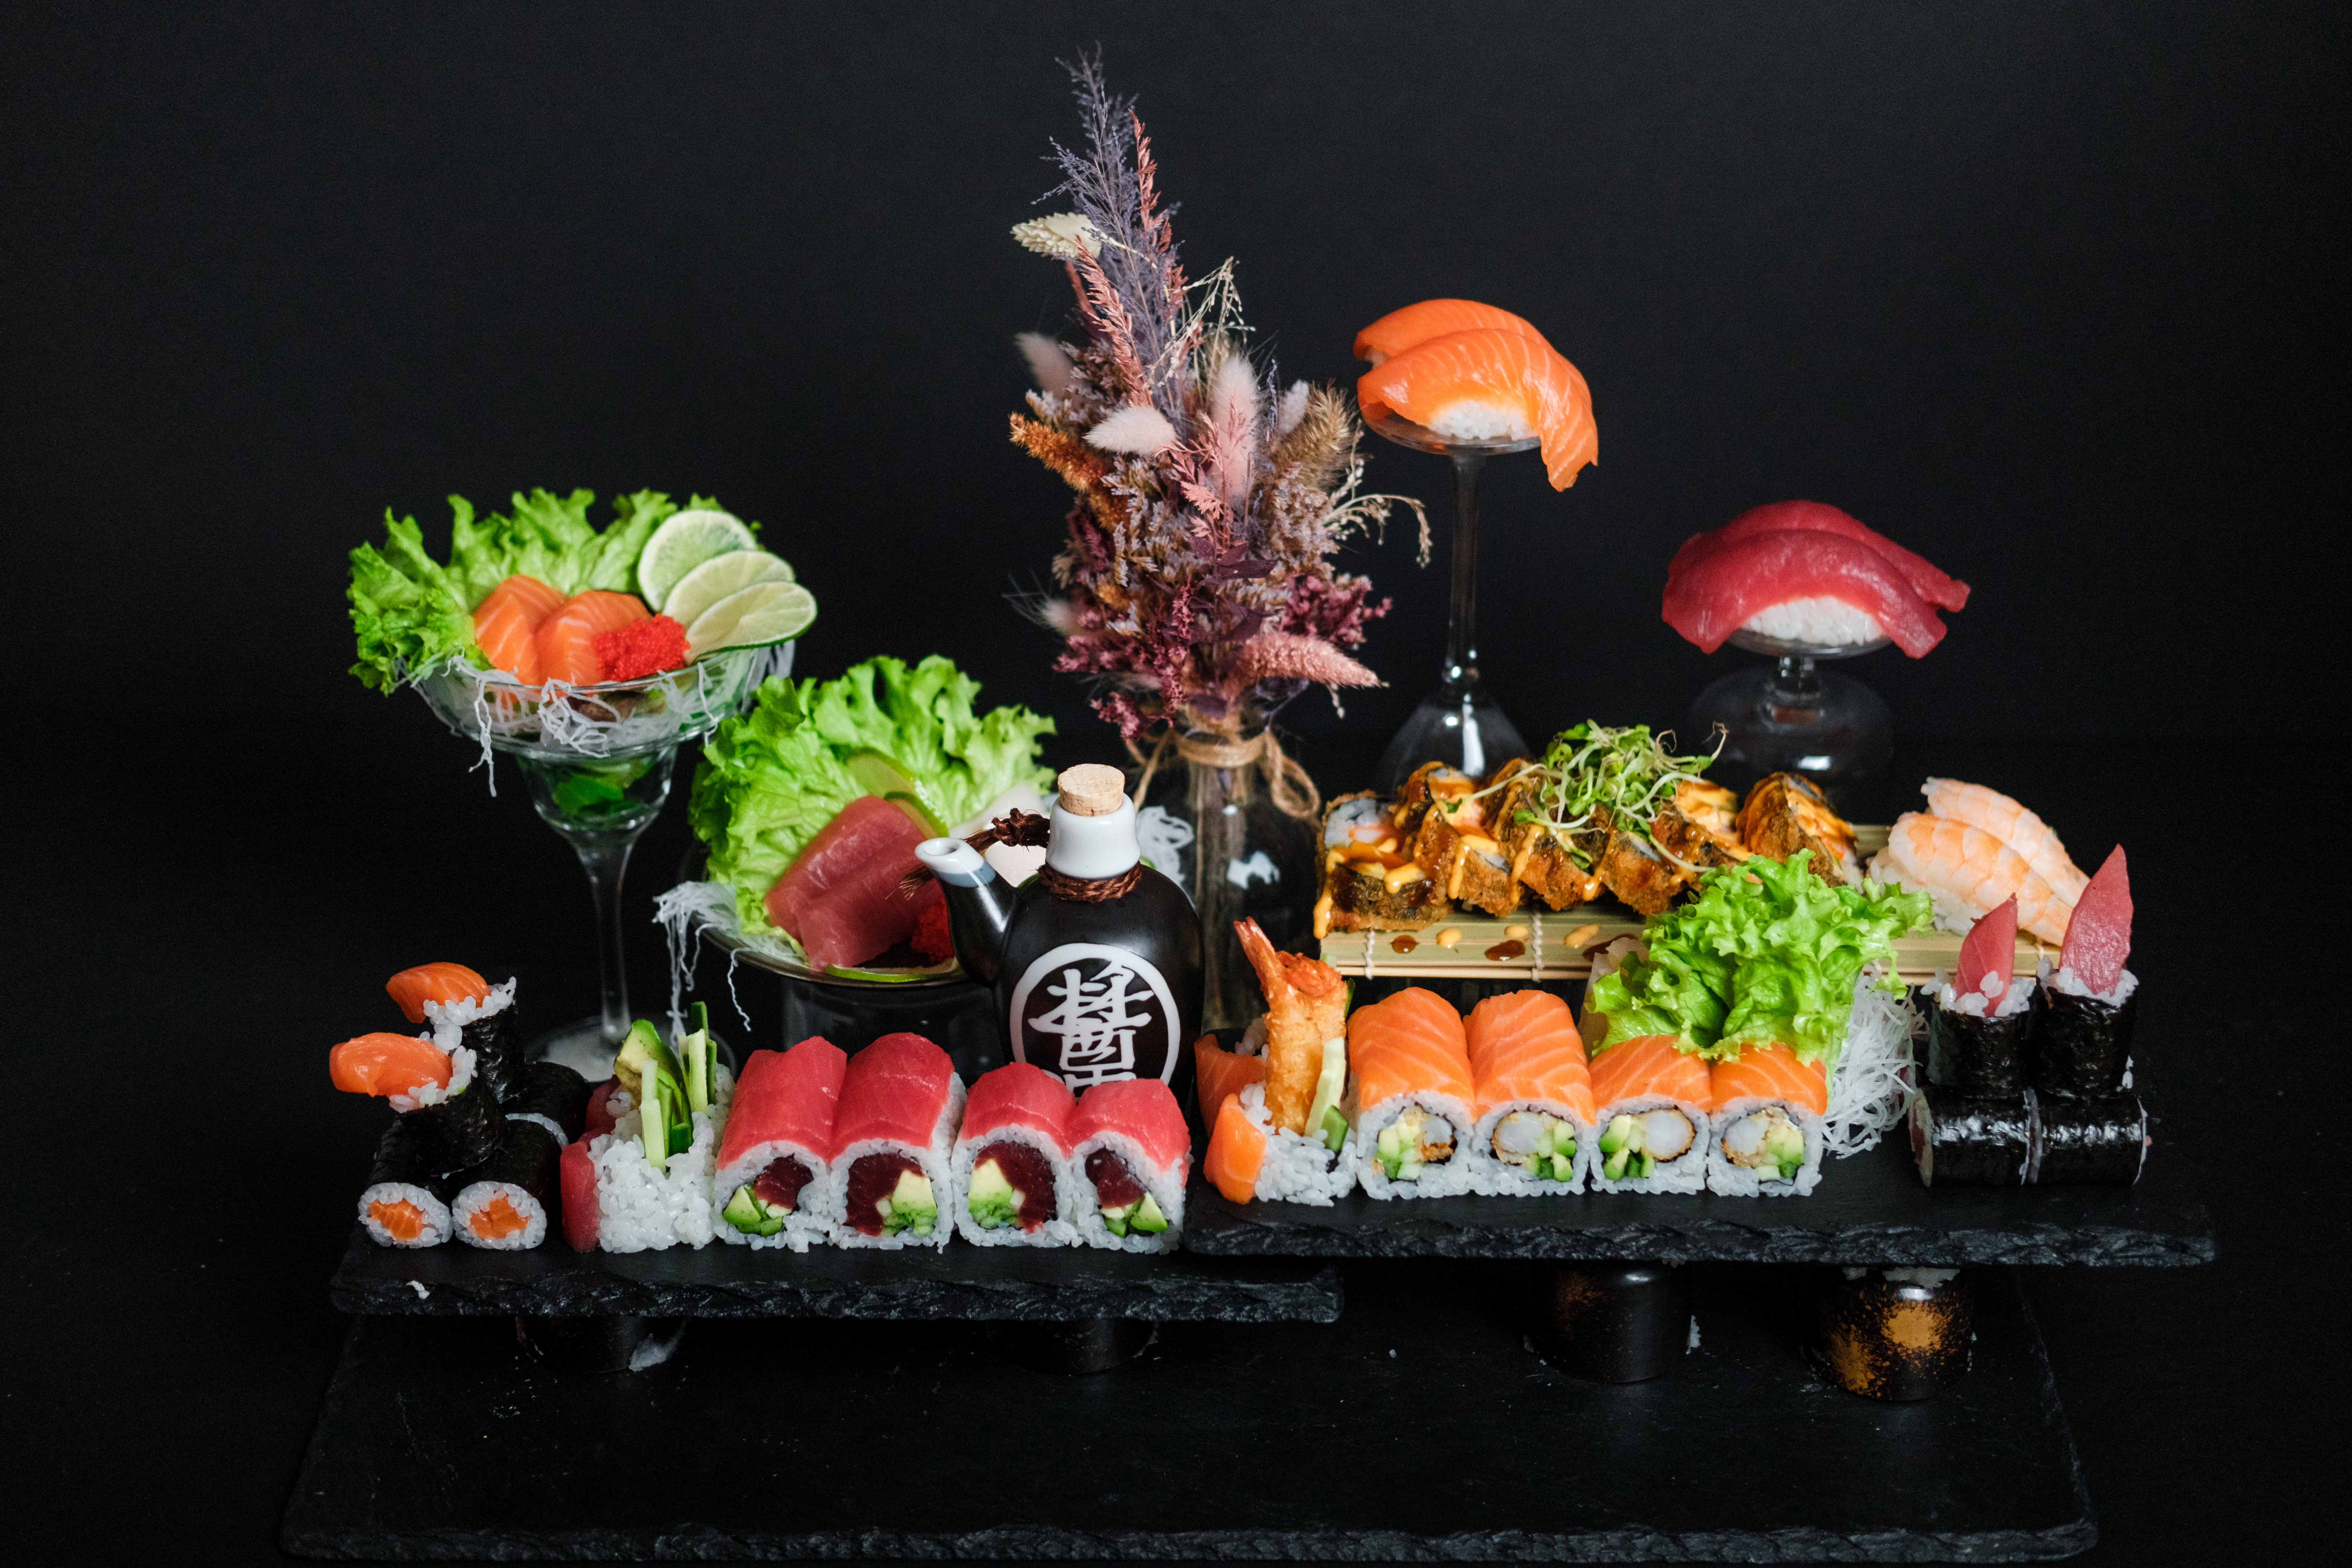 Das Sushi von Okome schmeckt so gut, wie es aussieht